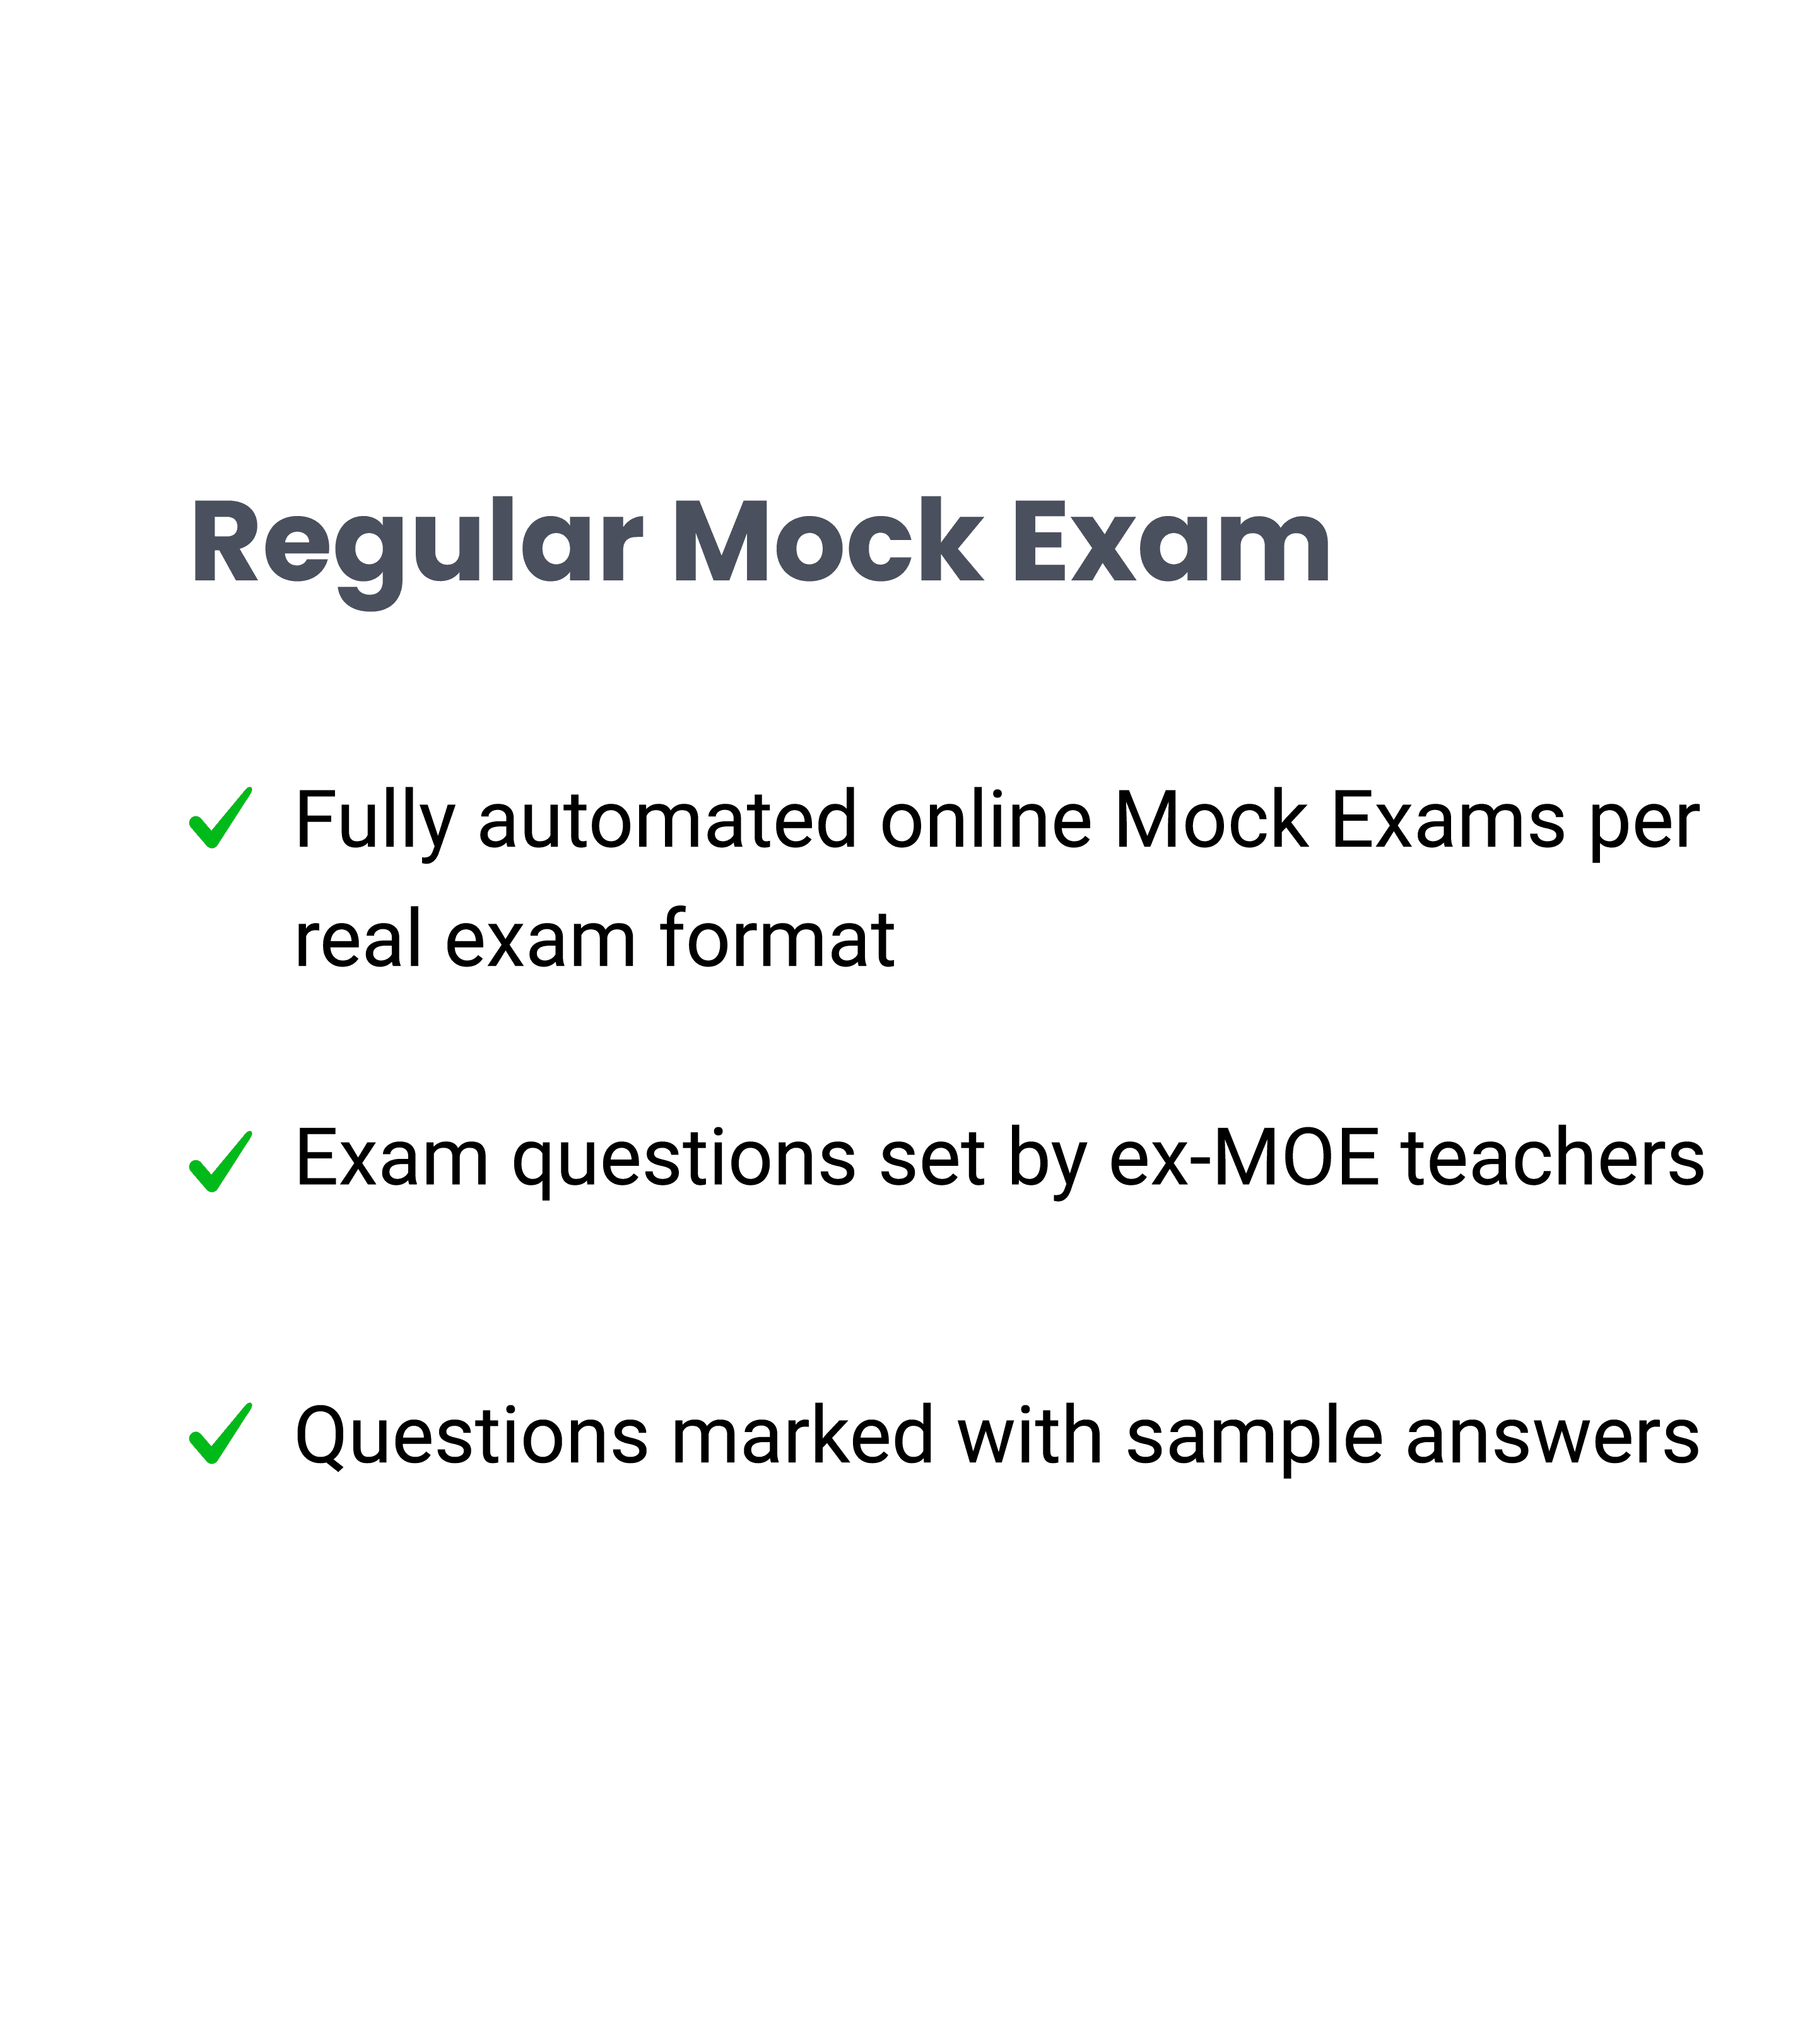 Regular mock exams